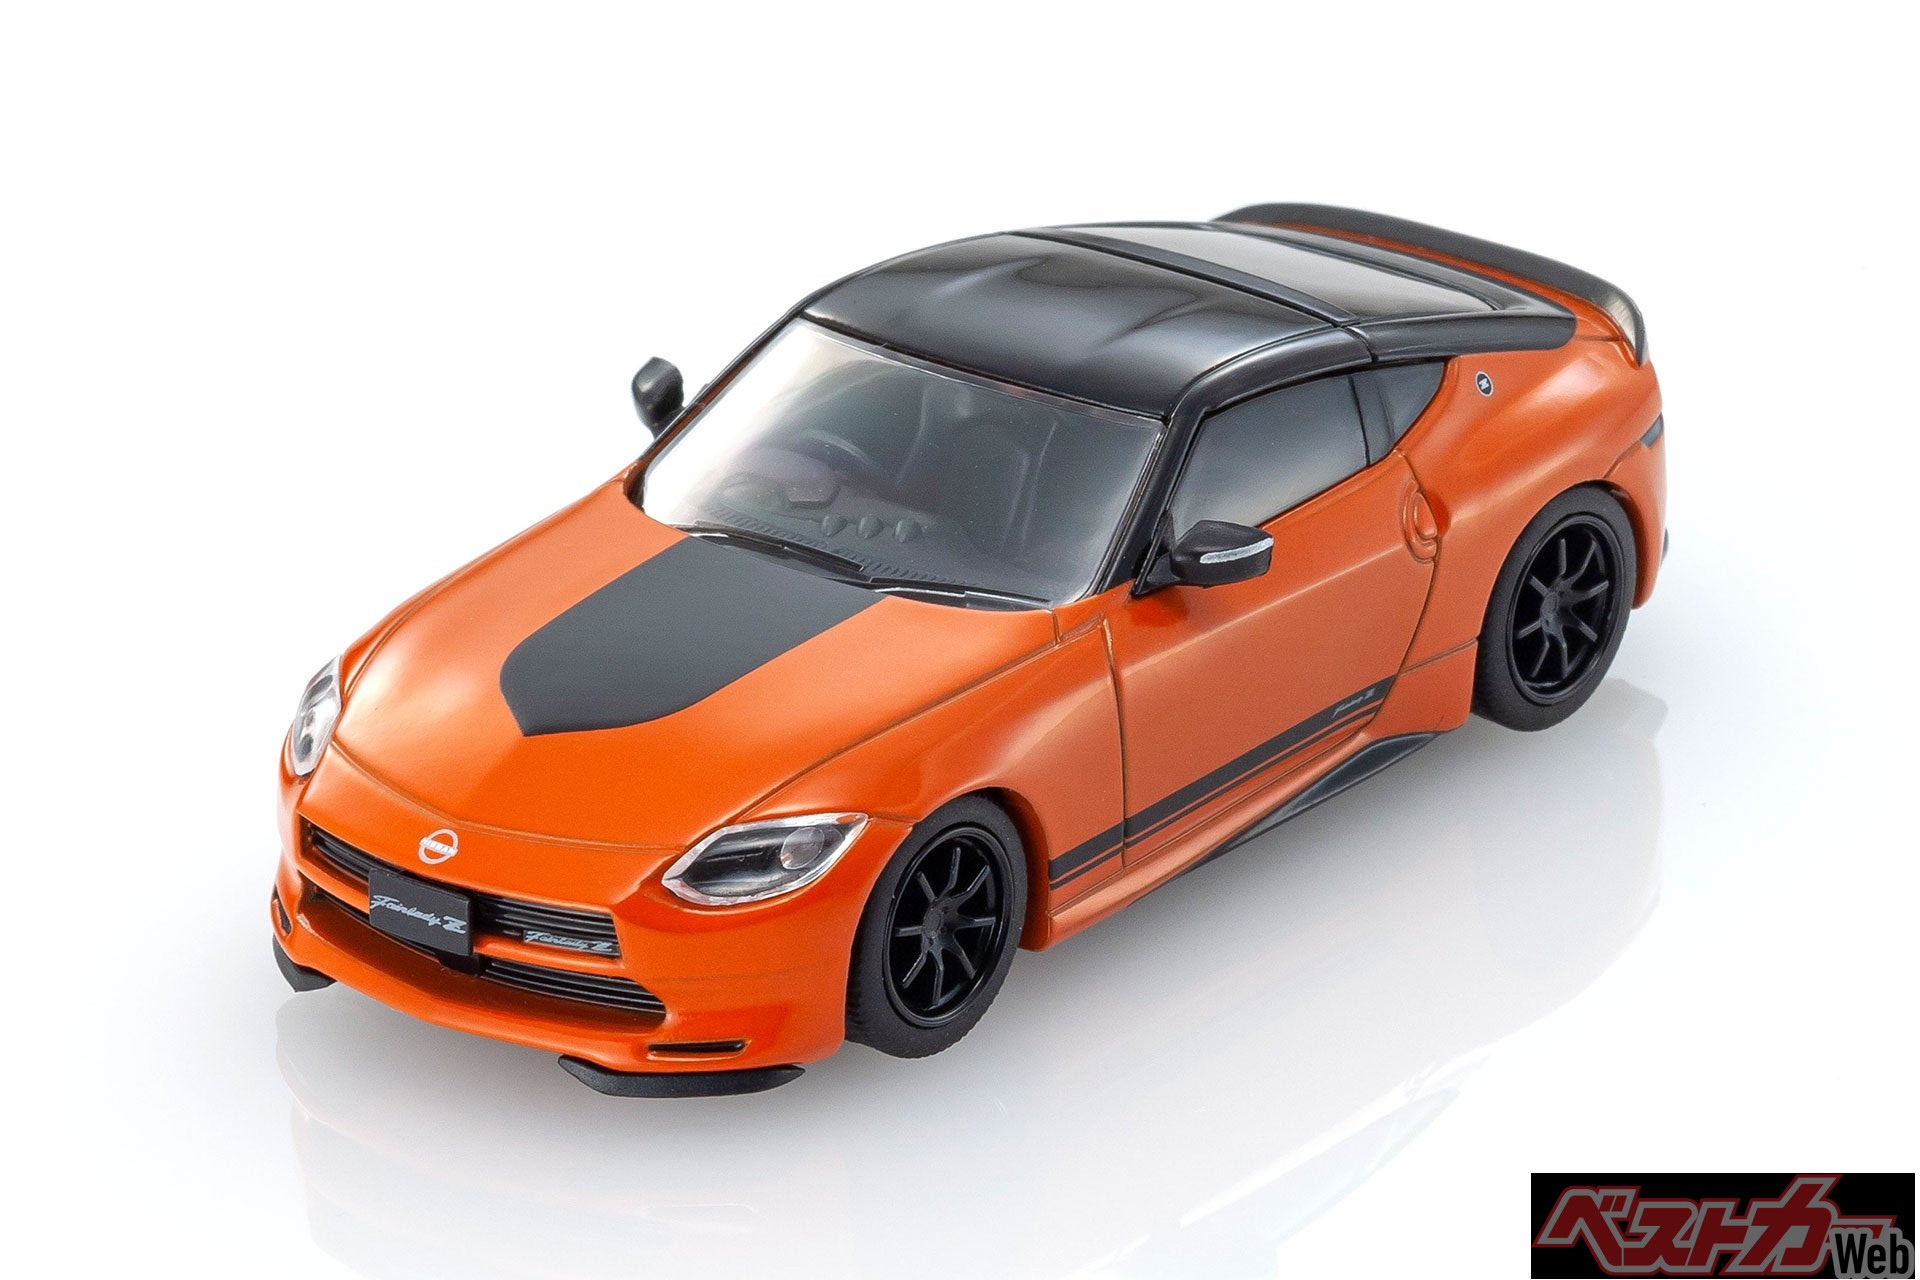 初代フェアレディZを想起させる眩しいばかりのオレンジのカラーが強く印象に残るスポーツカー